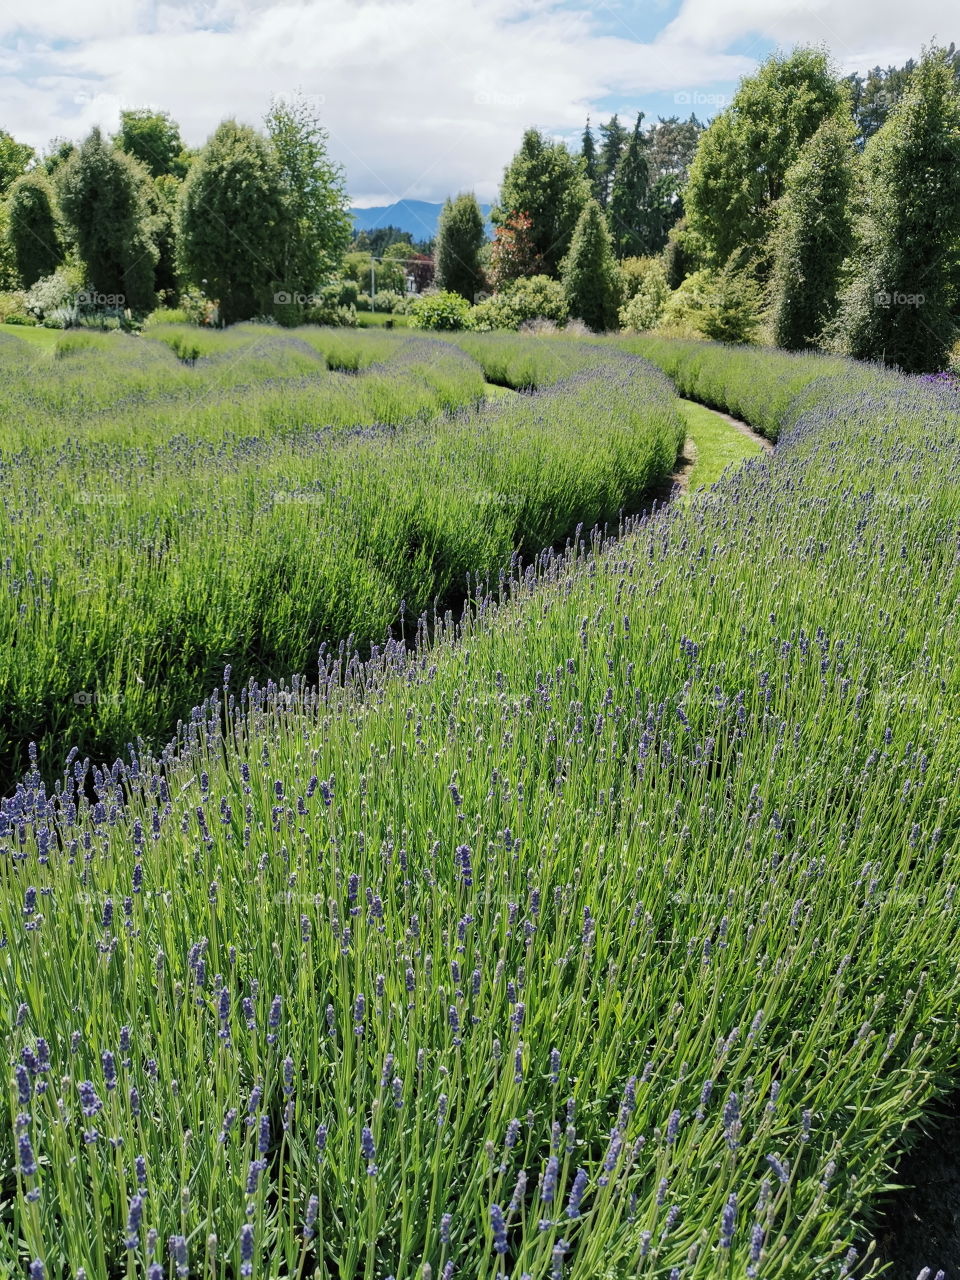 Lavender garden